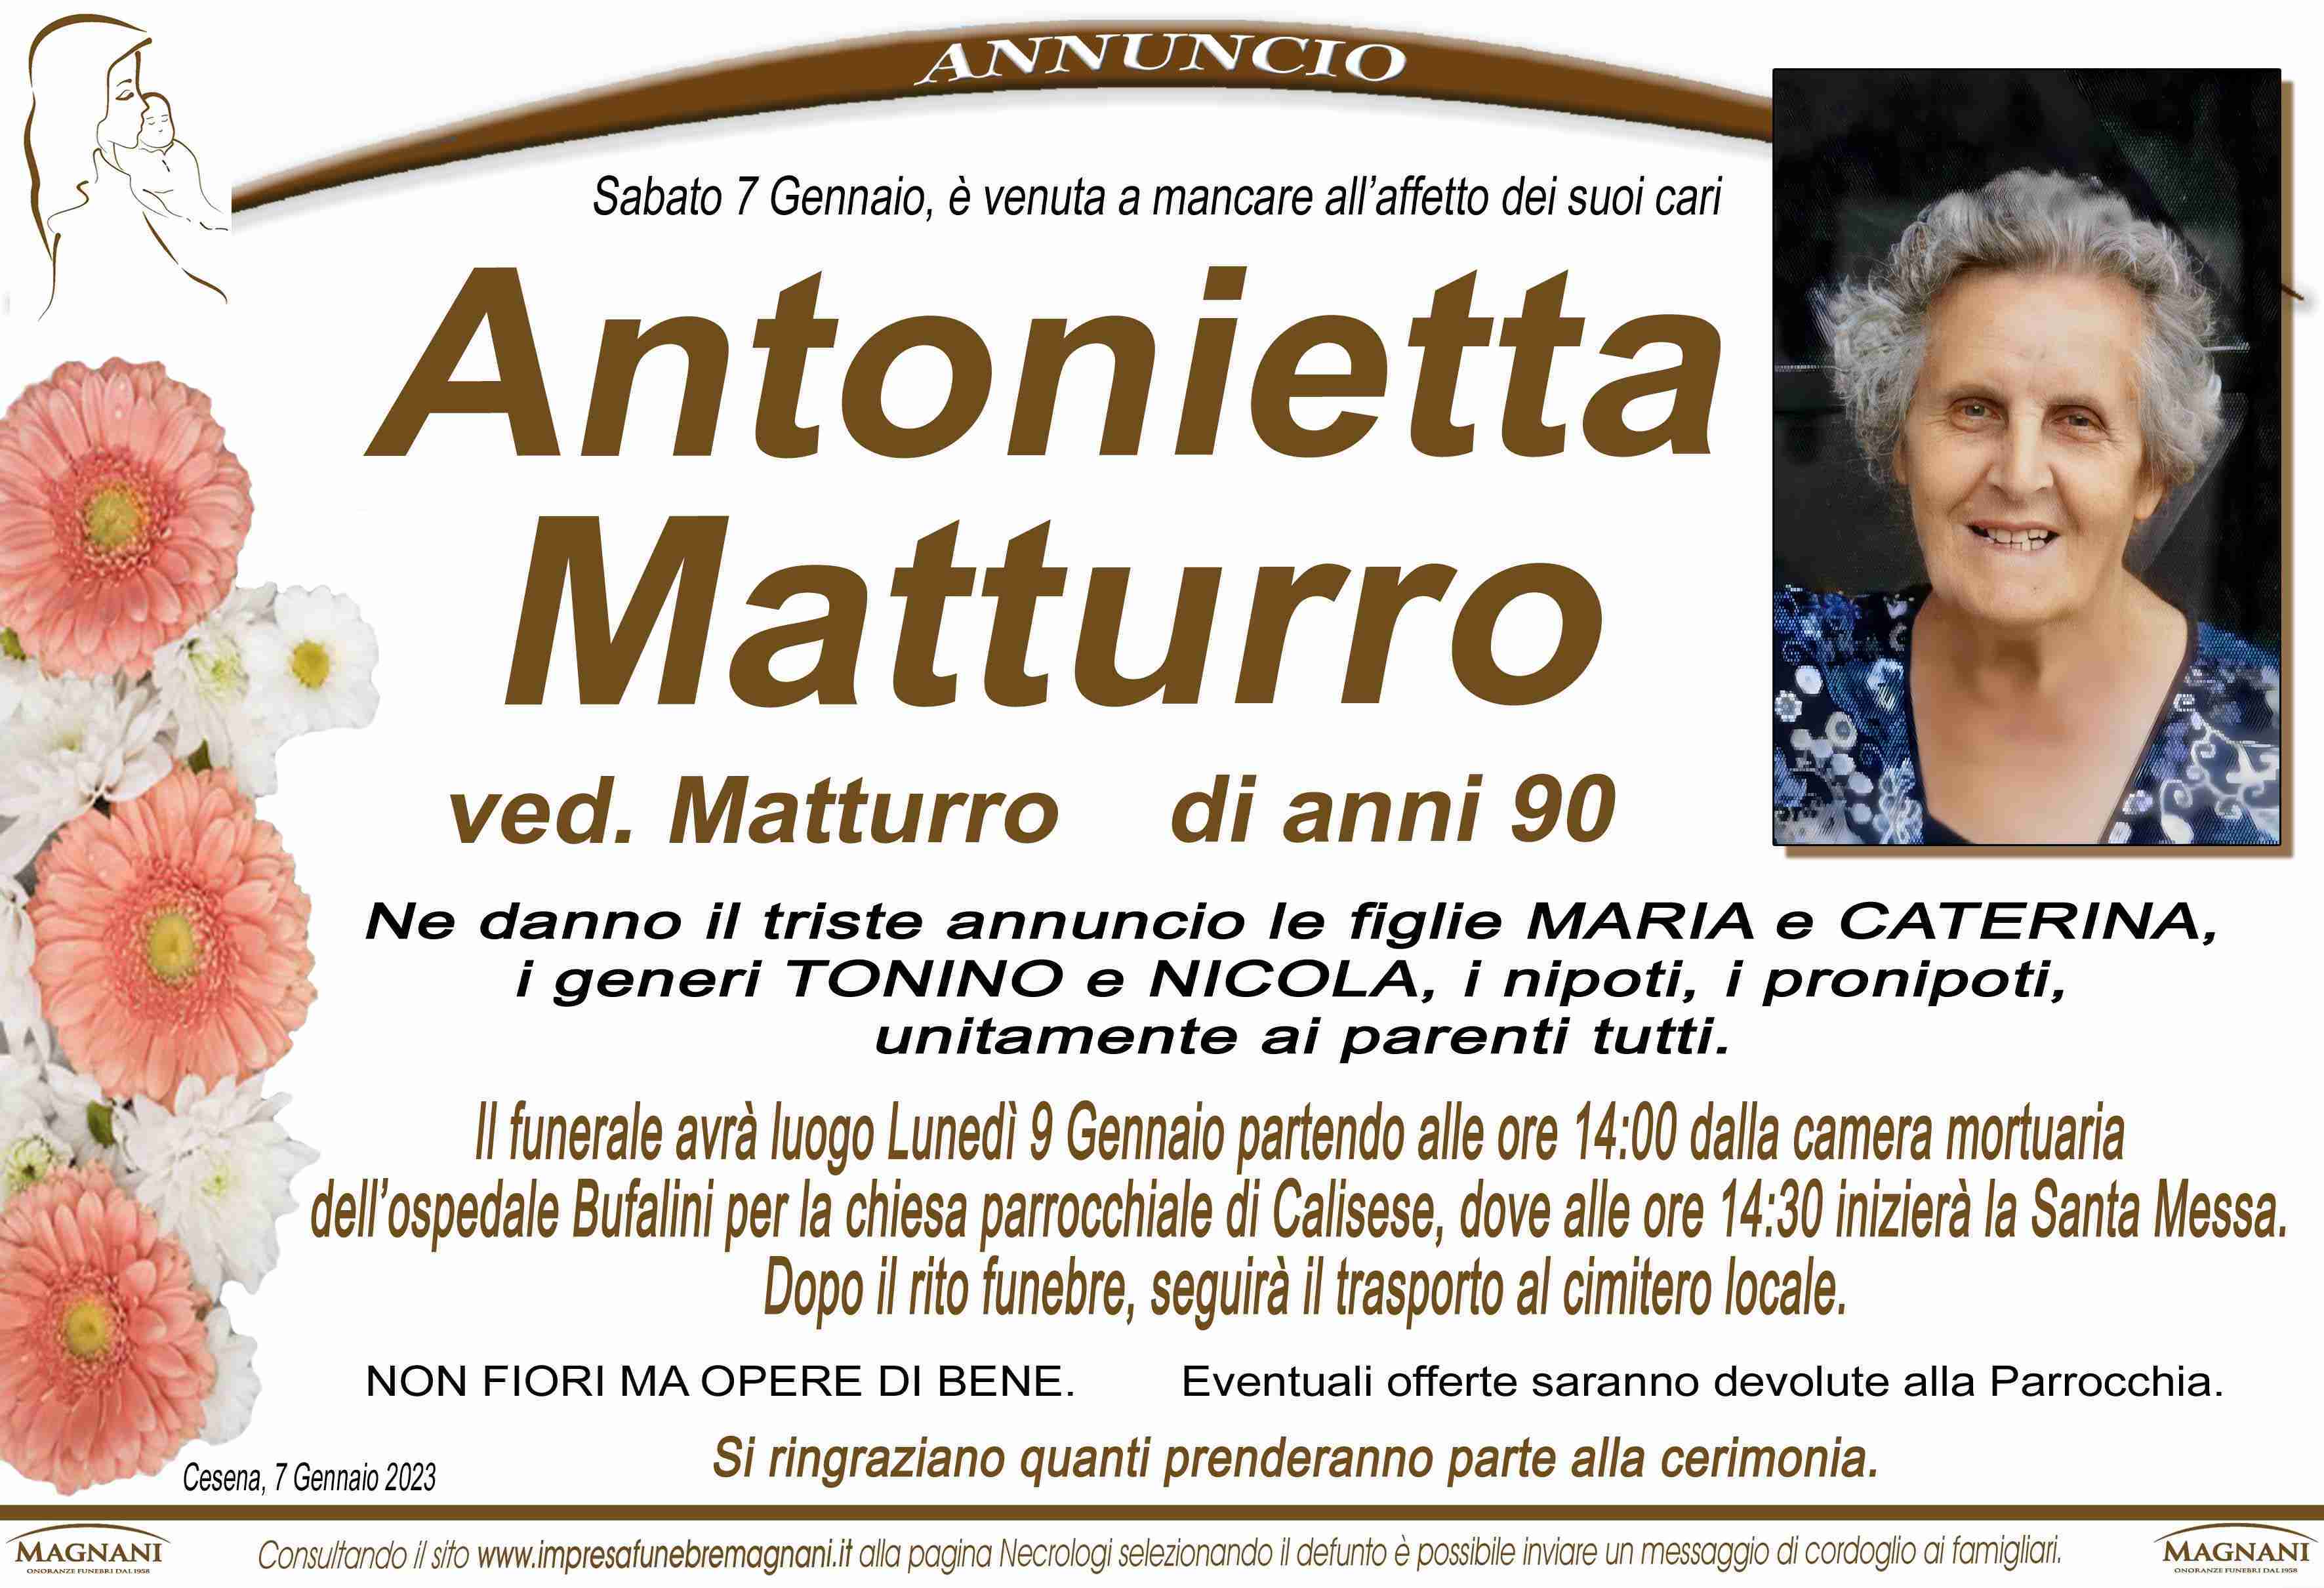 Antonietta Matturro